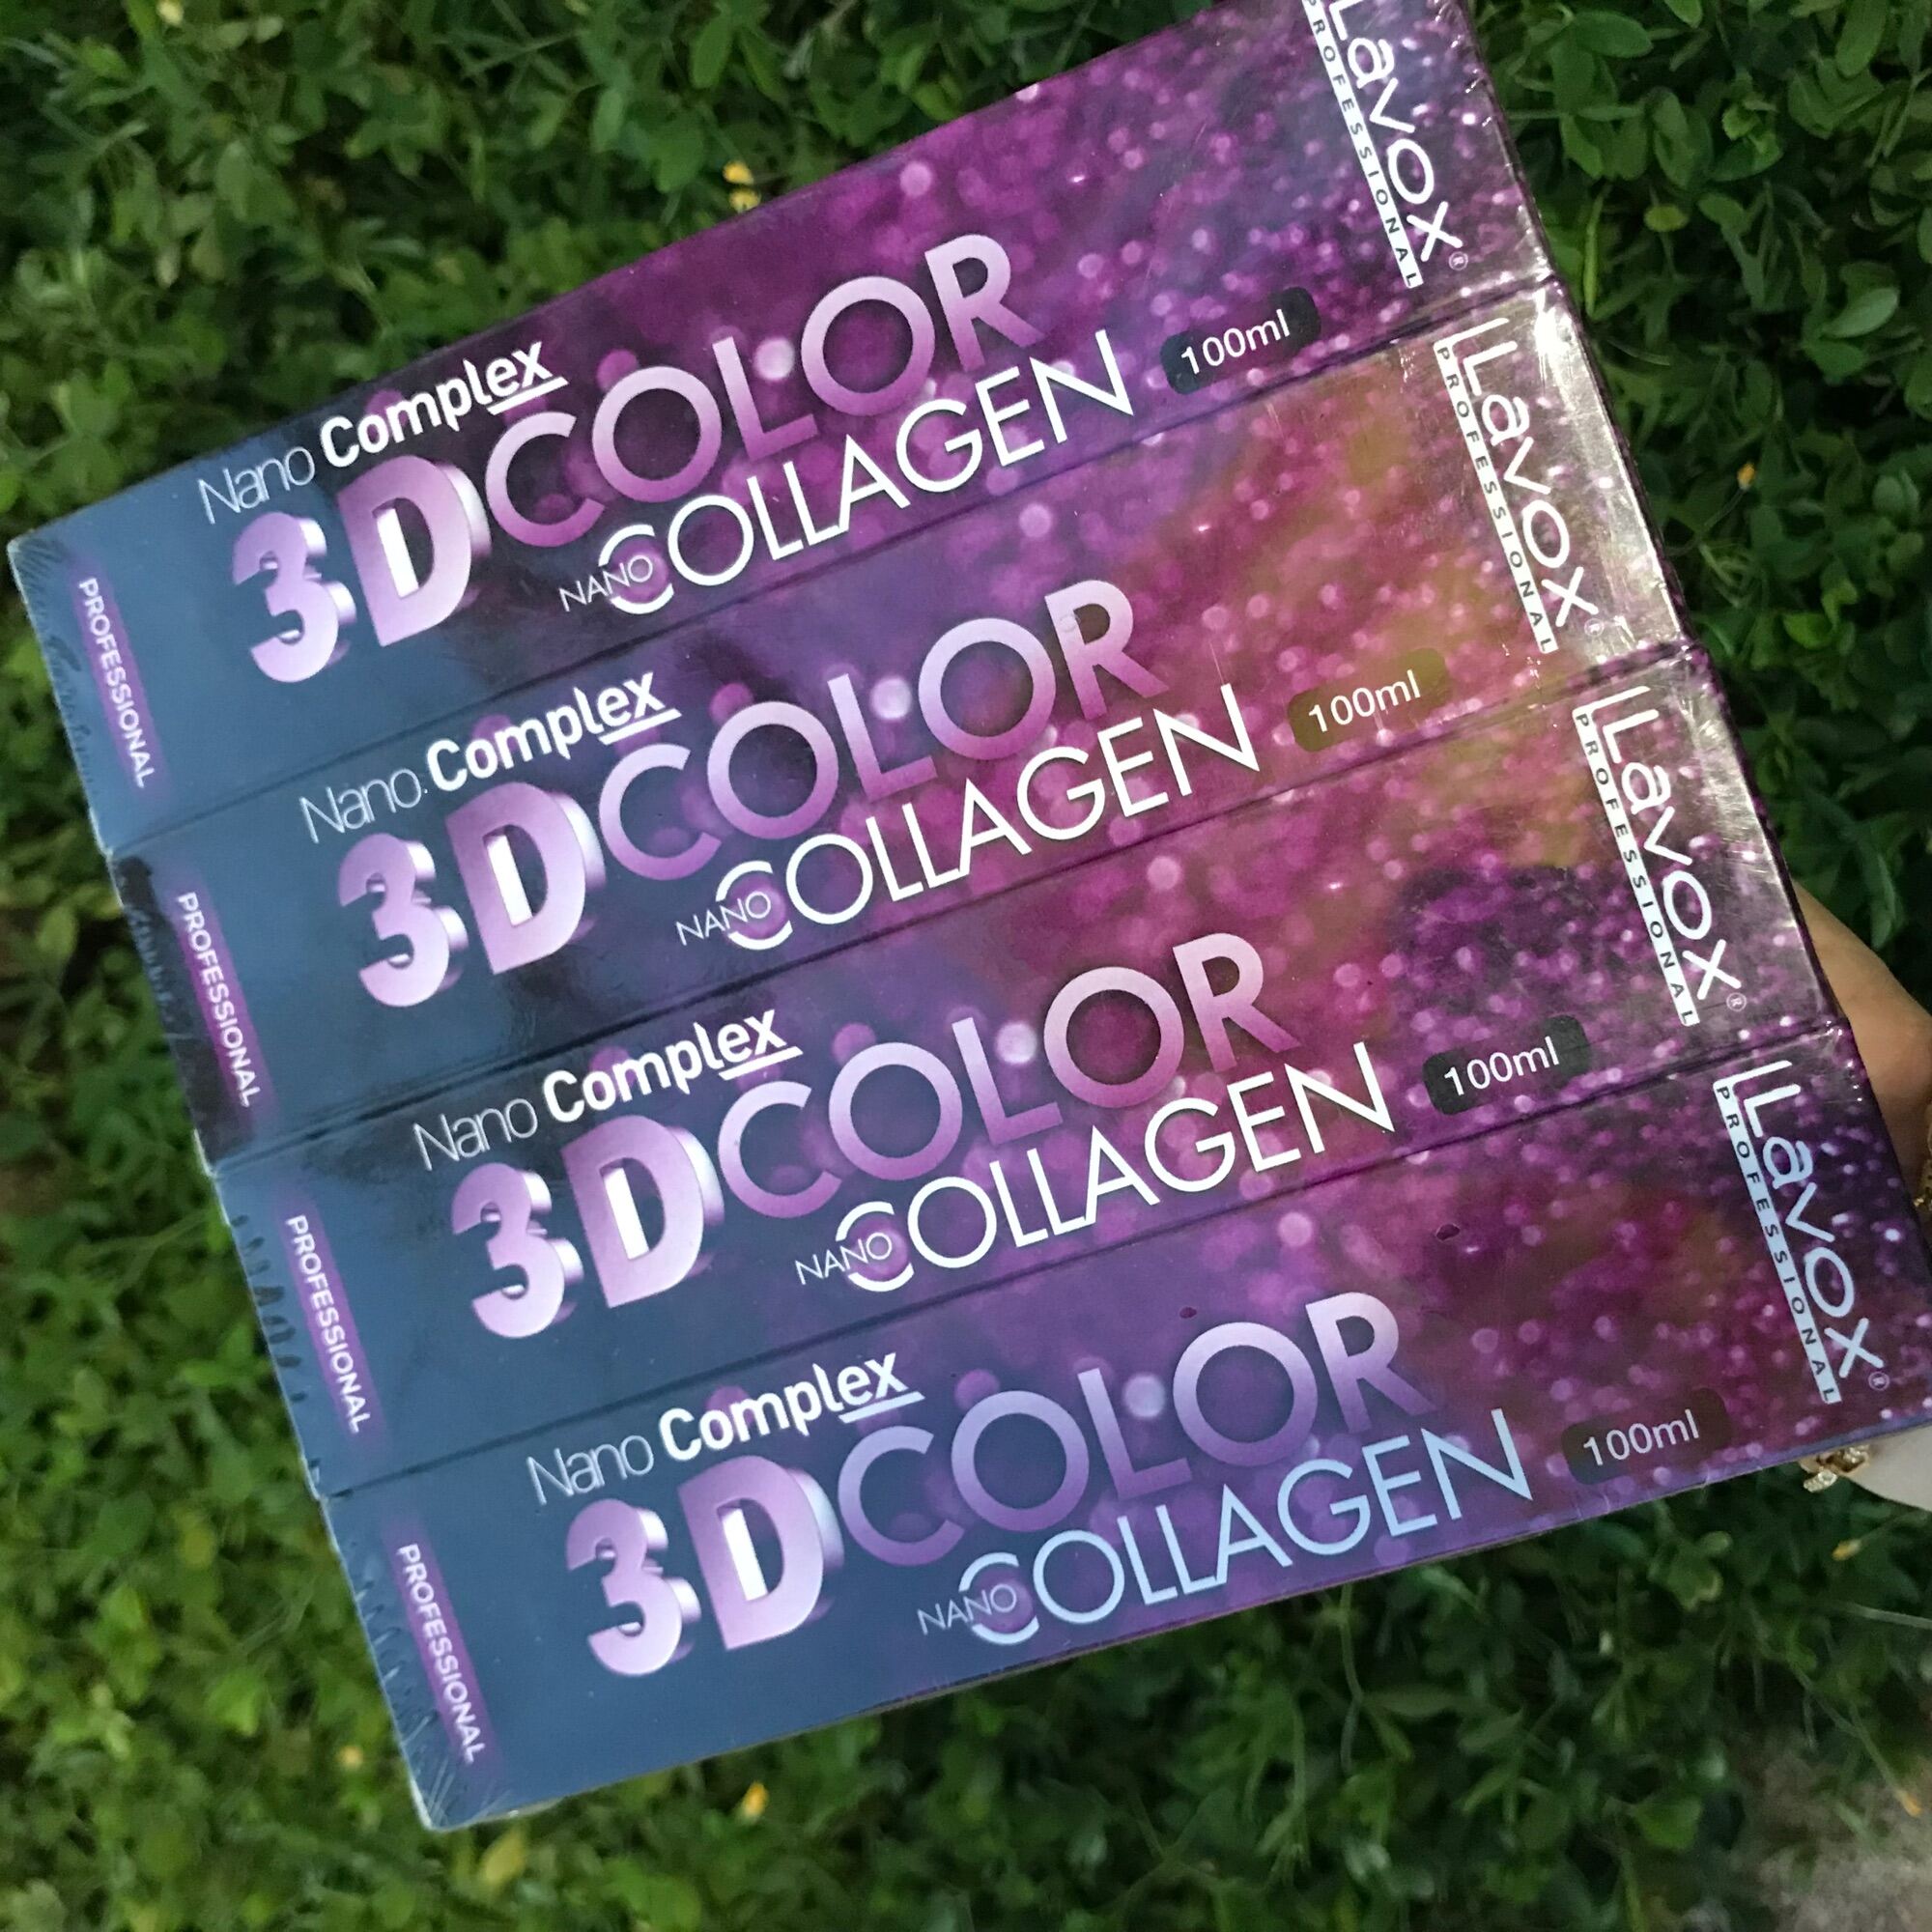 Thuốc Nhuộm Lavox 3D Color Nano Complex Collagen